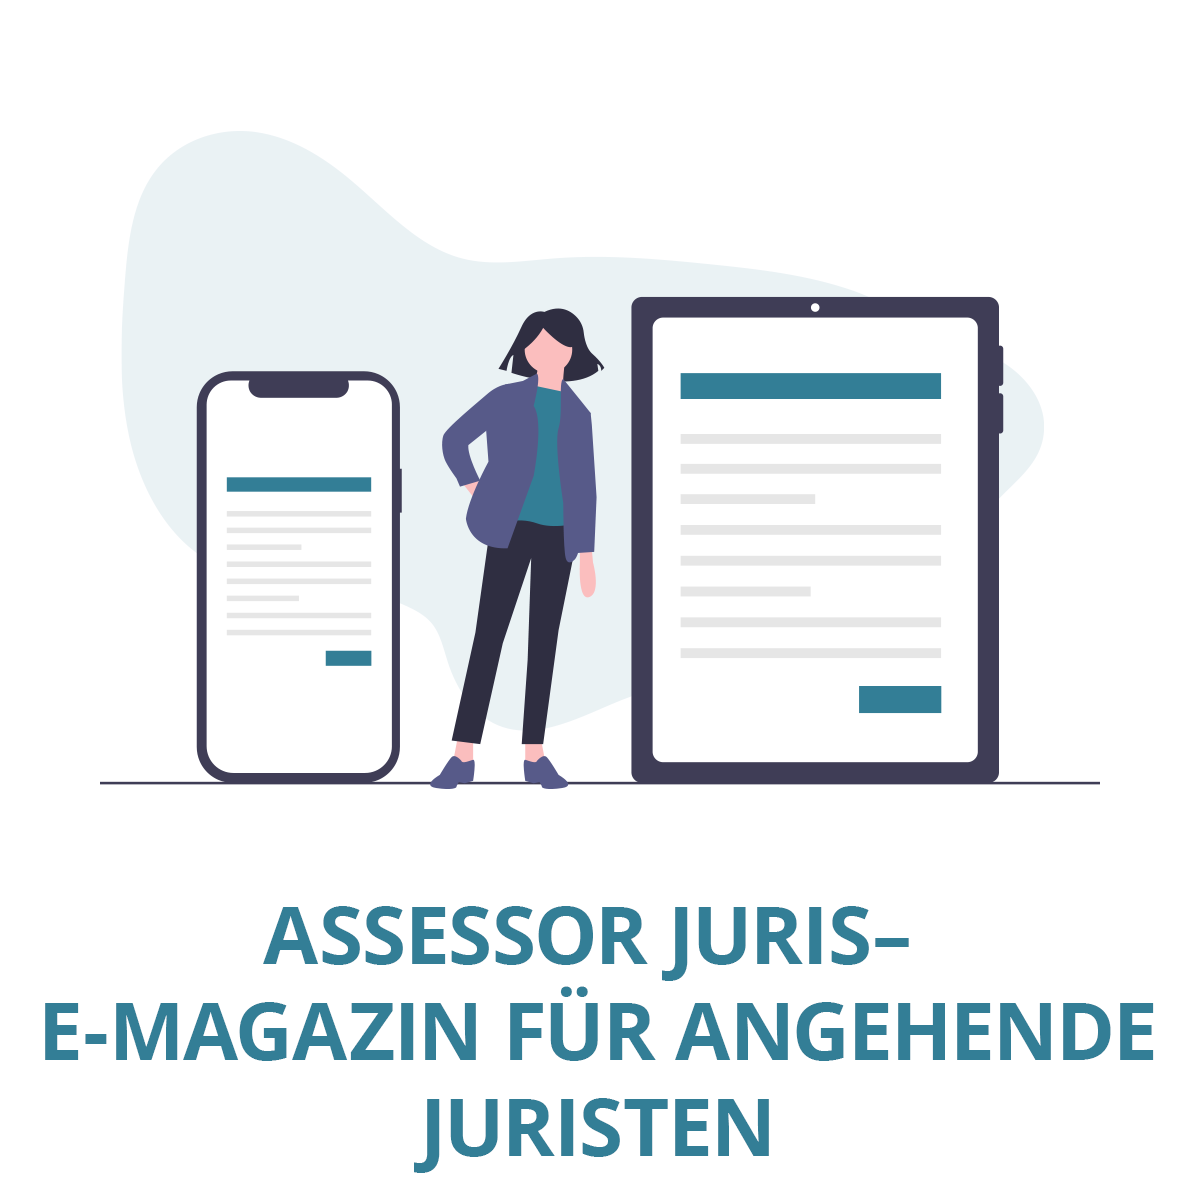 JurCase_Features_Assessor-Juris